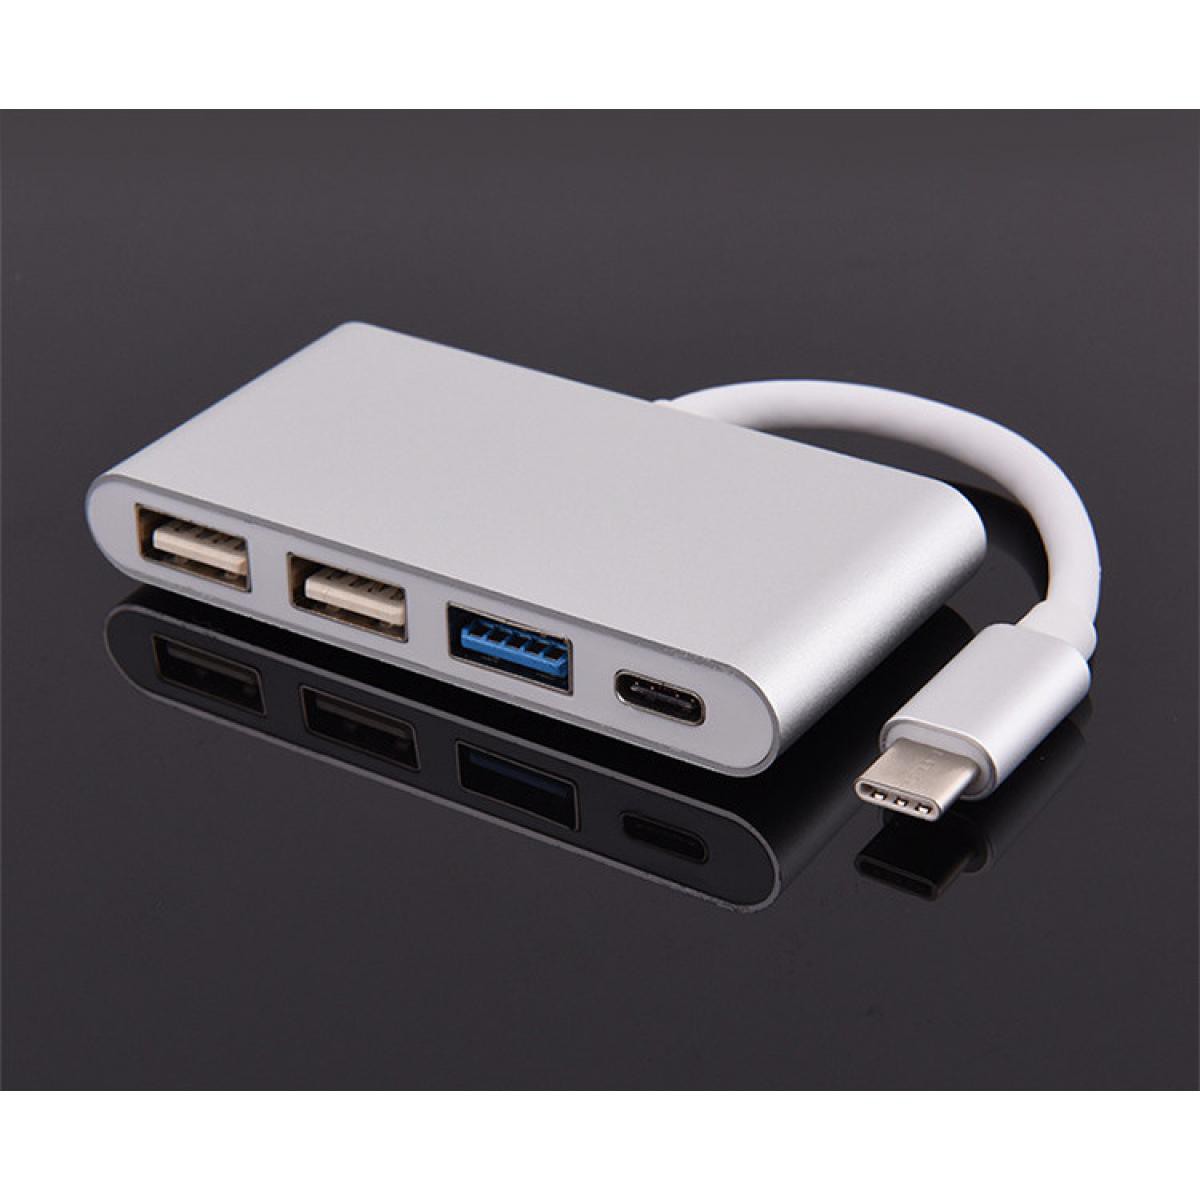 Shot - Multi Adaptateur 4 en 1 Type C pour GOOGLE Pixel 3 XL Smartphone Hub 2 ports USB 2.0 1 Port USB 3.0 (ARGENT) - Hub